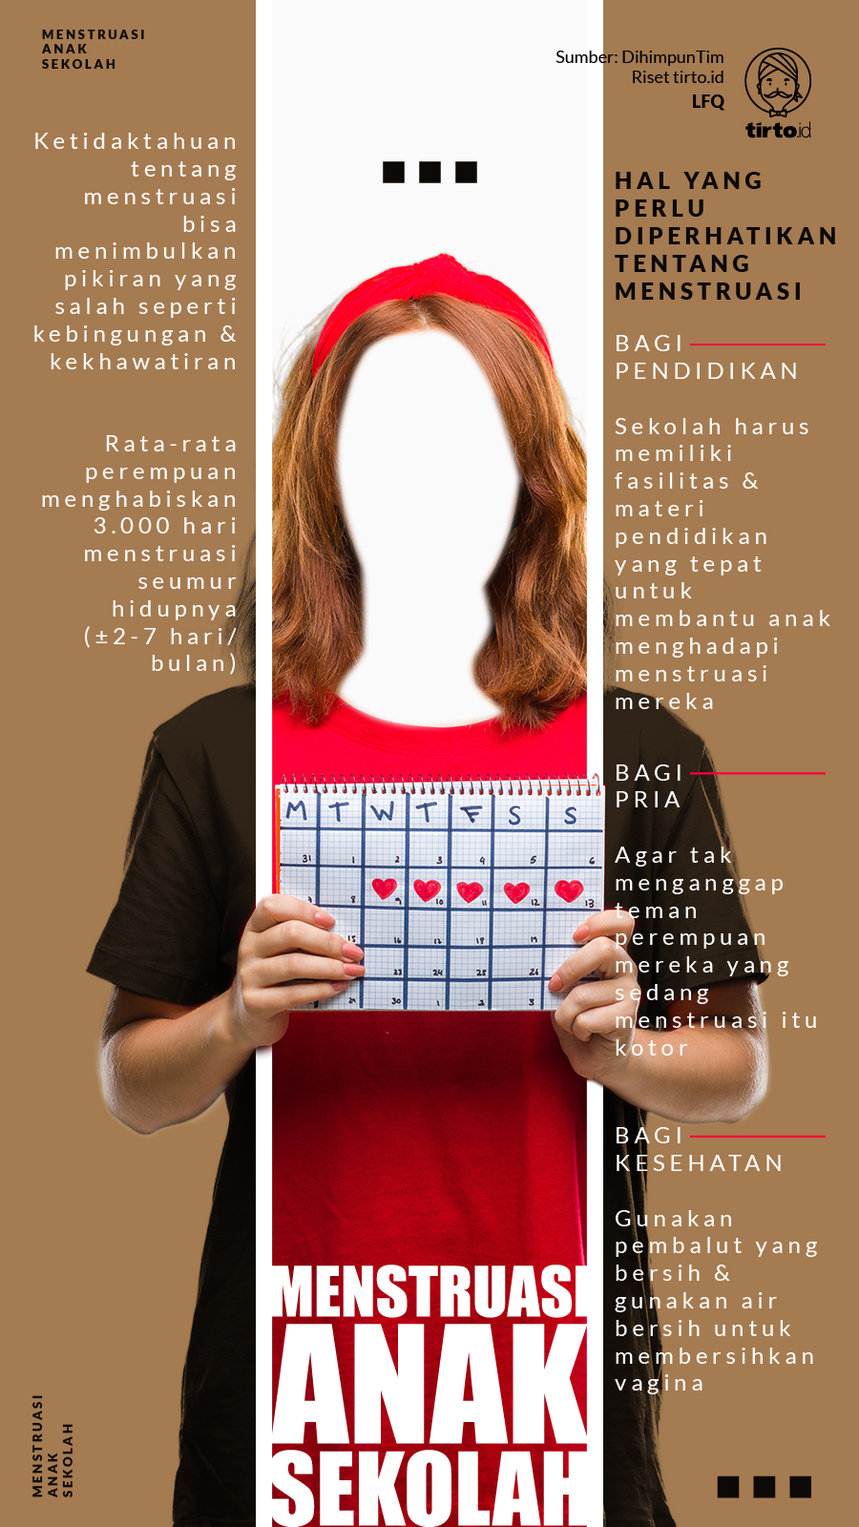 Infografik Menstruasi Anak Sekolah